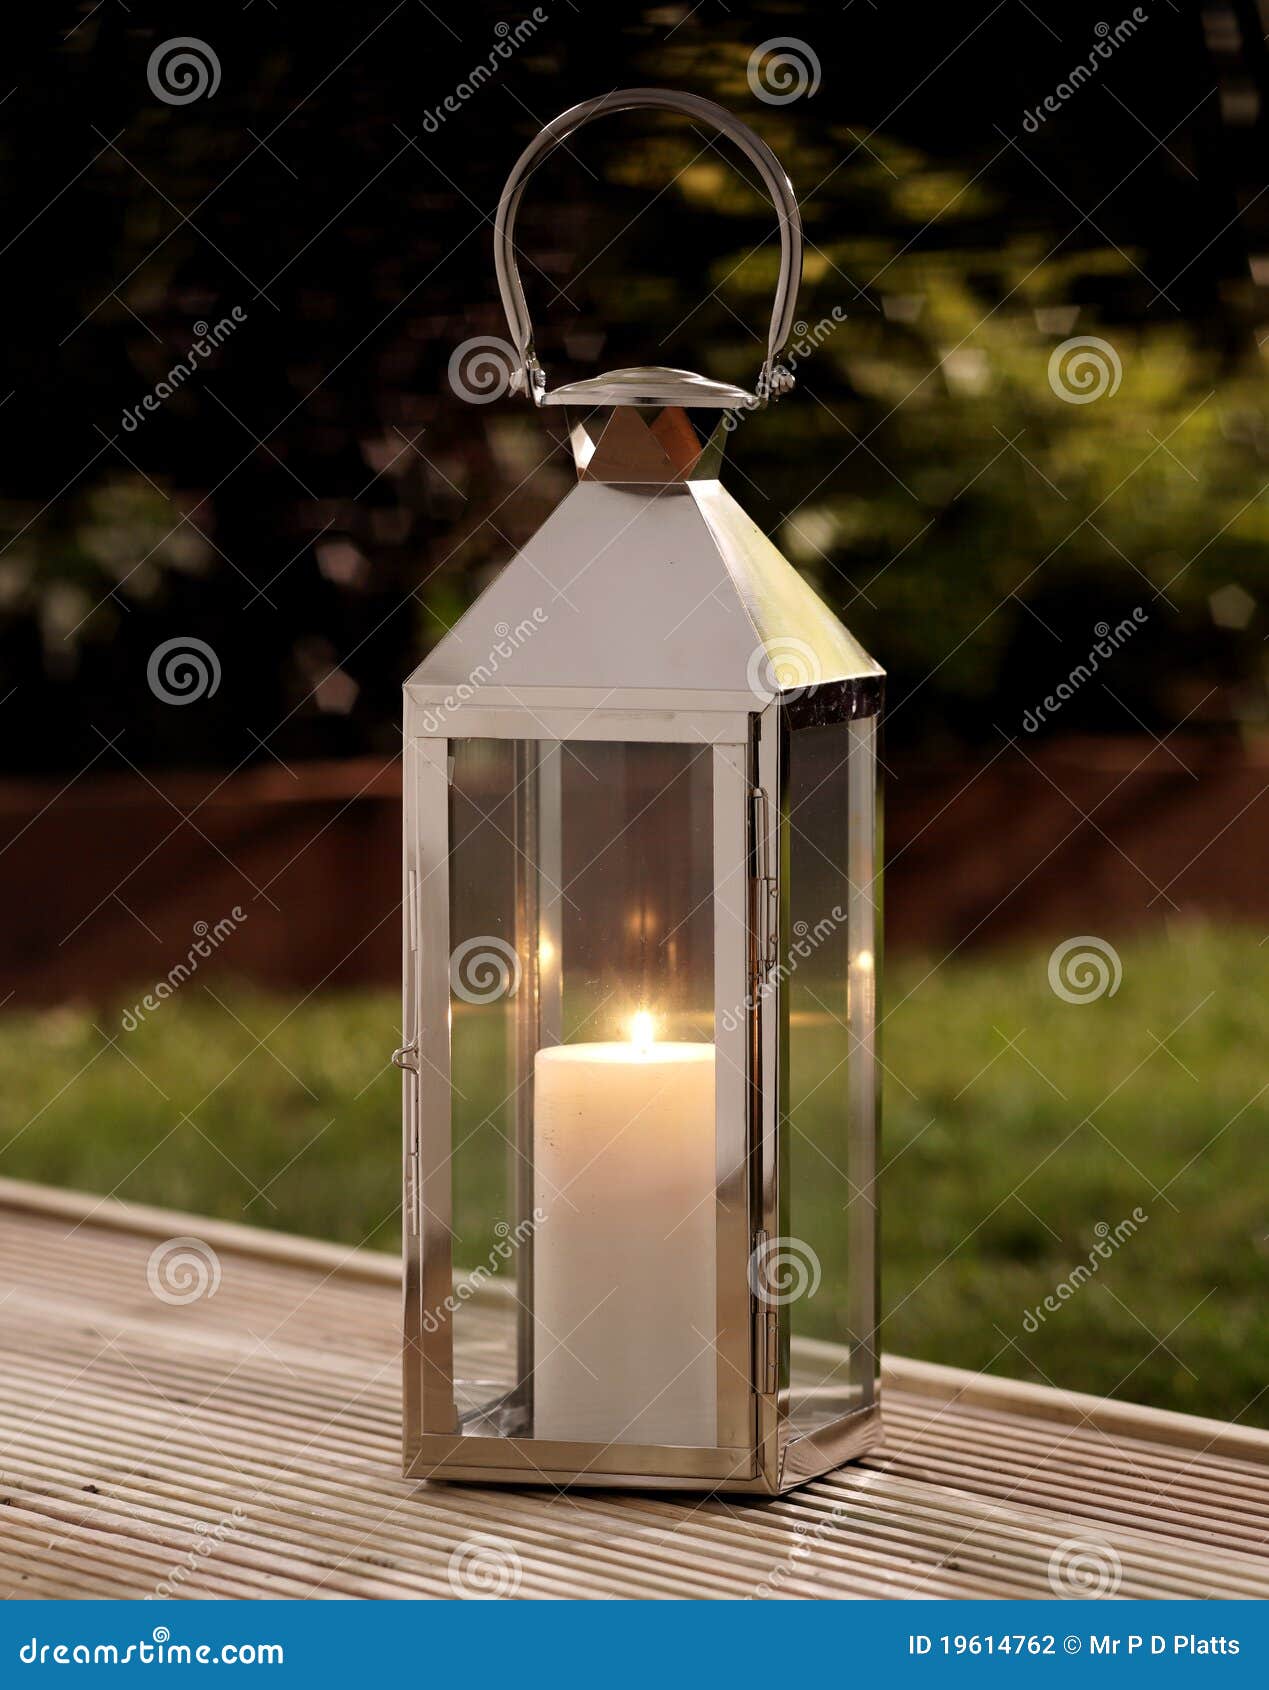 test Woestijn Laan De lantaarn van de tuin stock foto. Image of nacht, lantaarn - 19614762